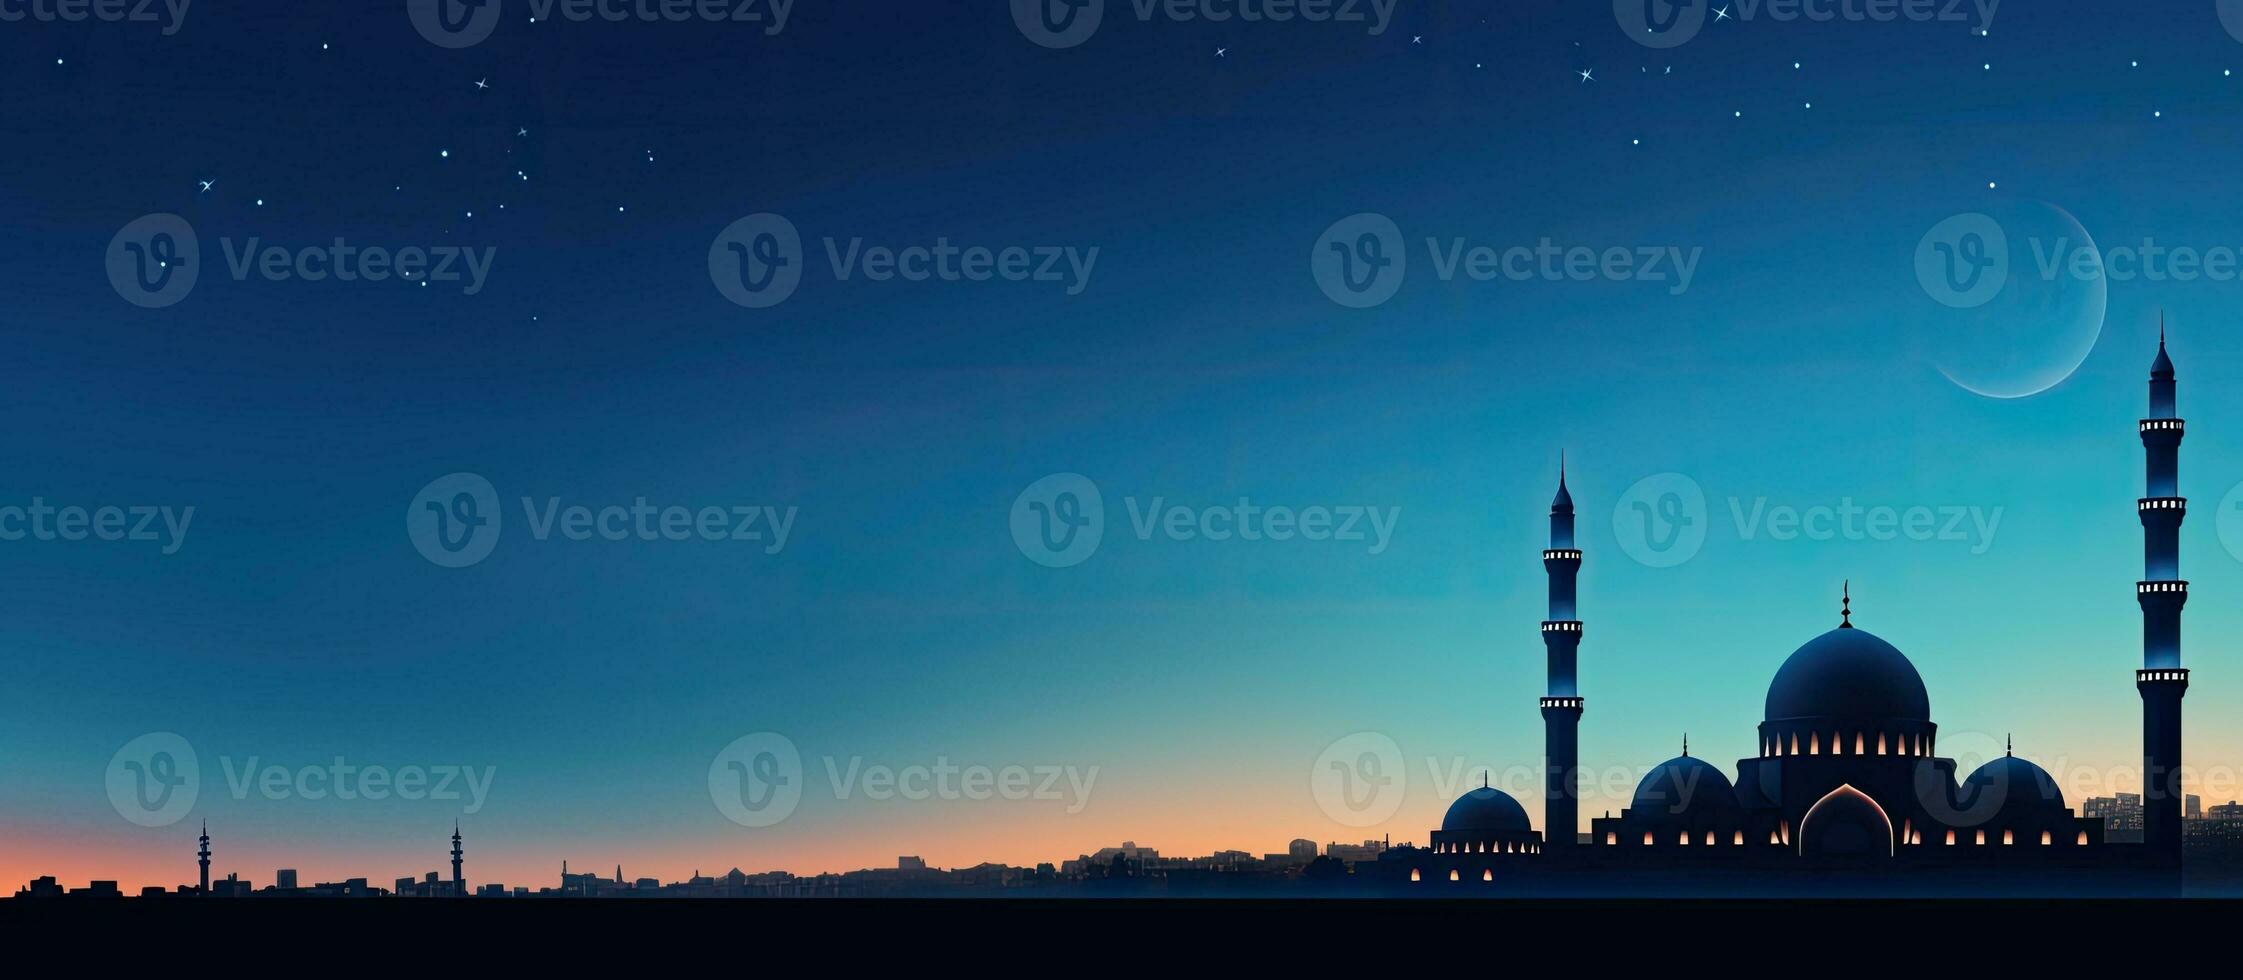 islámico religioso símbolo silueta de mezquitas Hazme y creciente Luna en contra crepúsculo cielo con texto espacio para Ramadán eid Alabama adha eid Alabama fitr y Mubarak foto